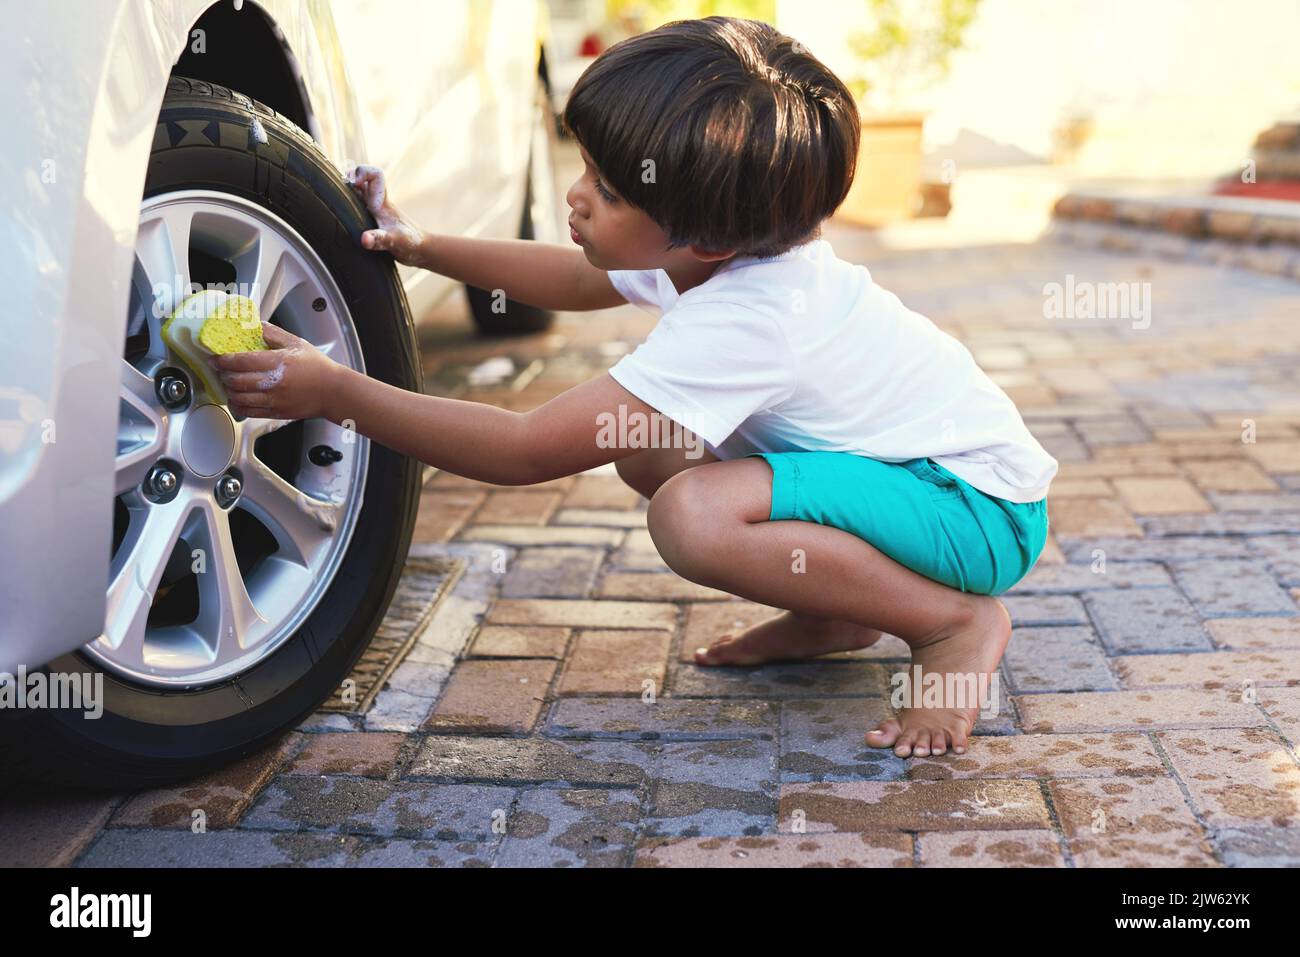 Dieses Auto wird wieder wie neu aussehen. Ein kleiner Junge wäscht ein Rad von einem Auto. Stockfoto